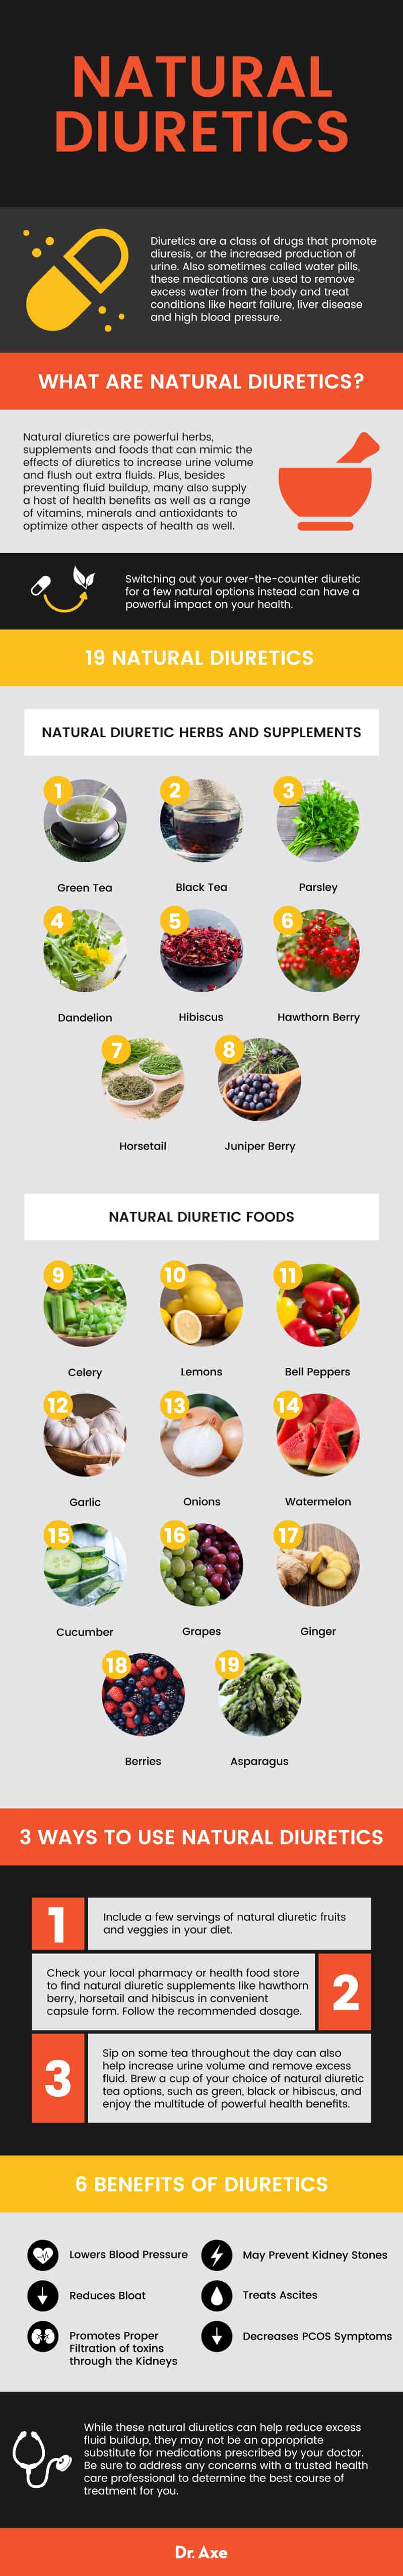 Natural diuretics - Dr. Axe